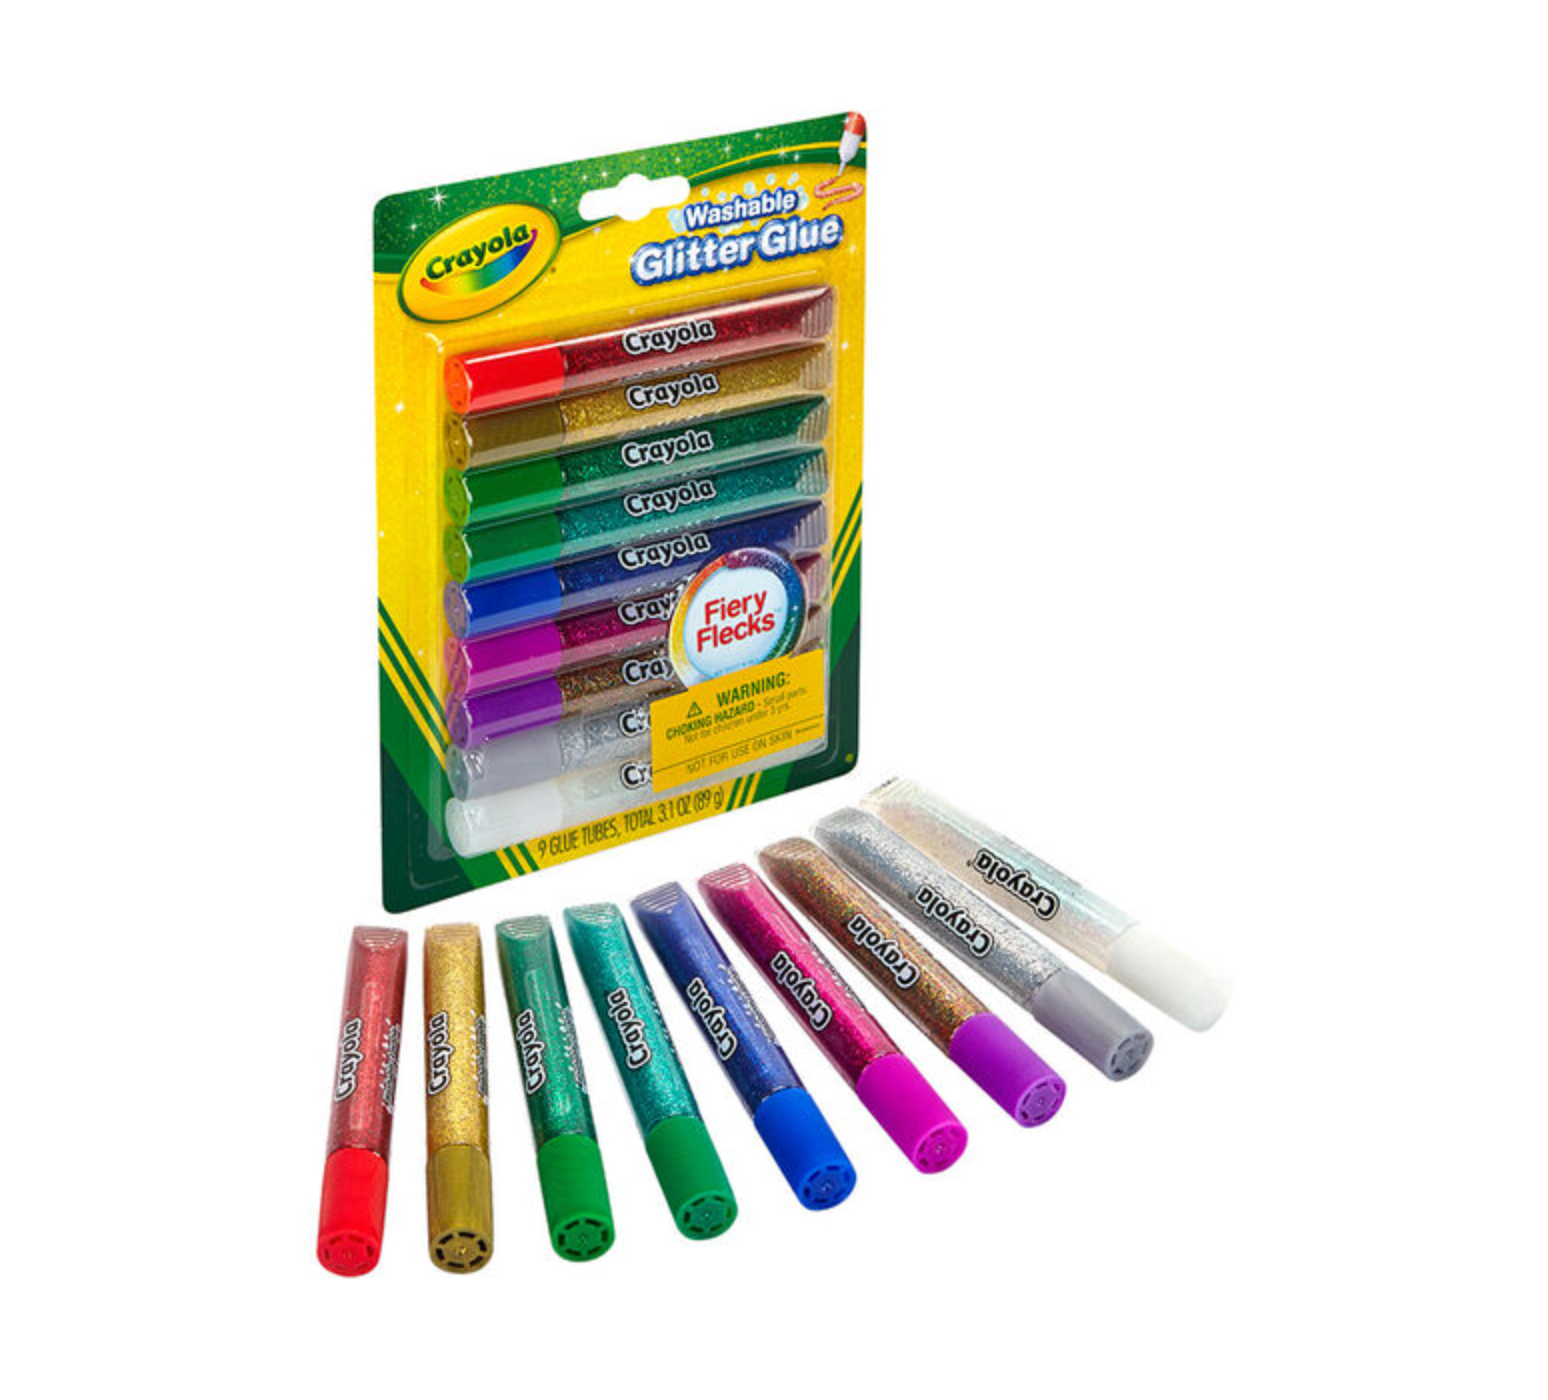 Crayola 9ct. Washable Glitter Glue, Fiery Flecks